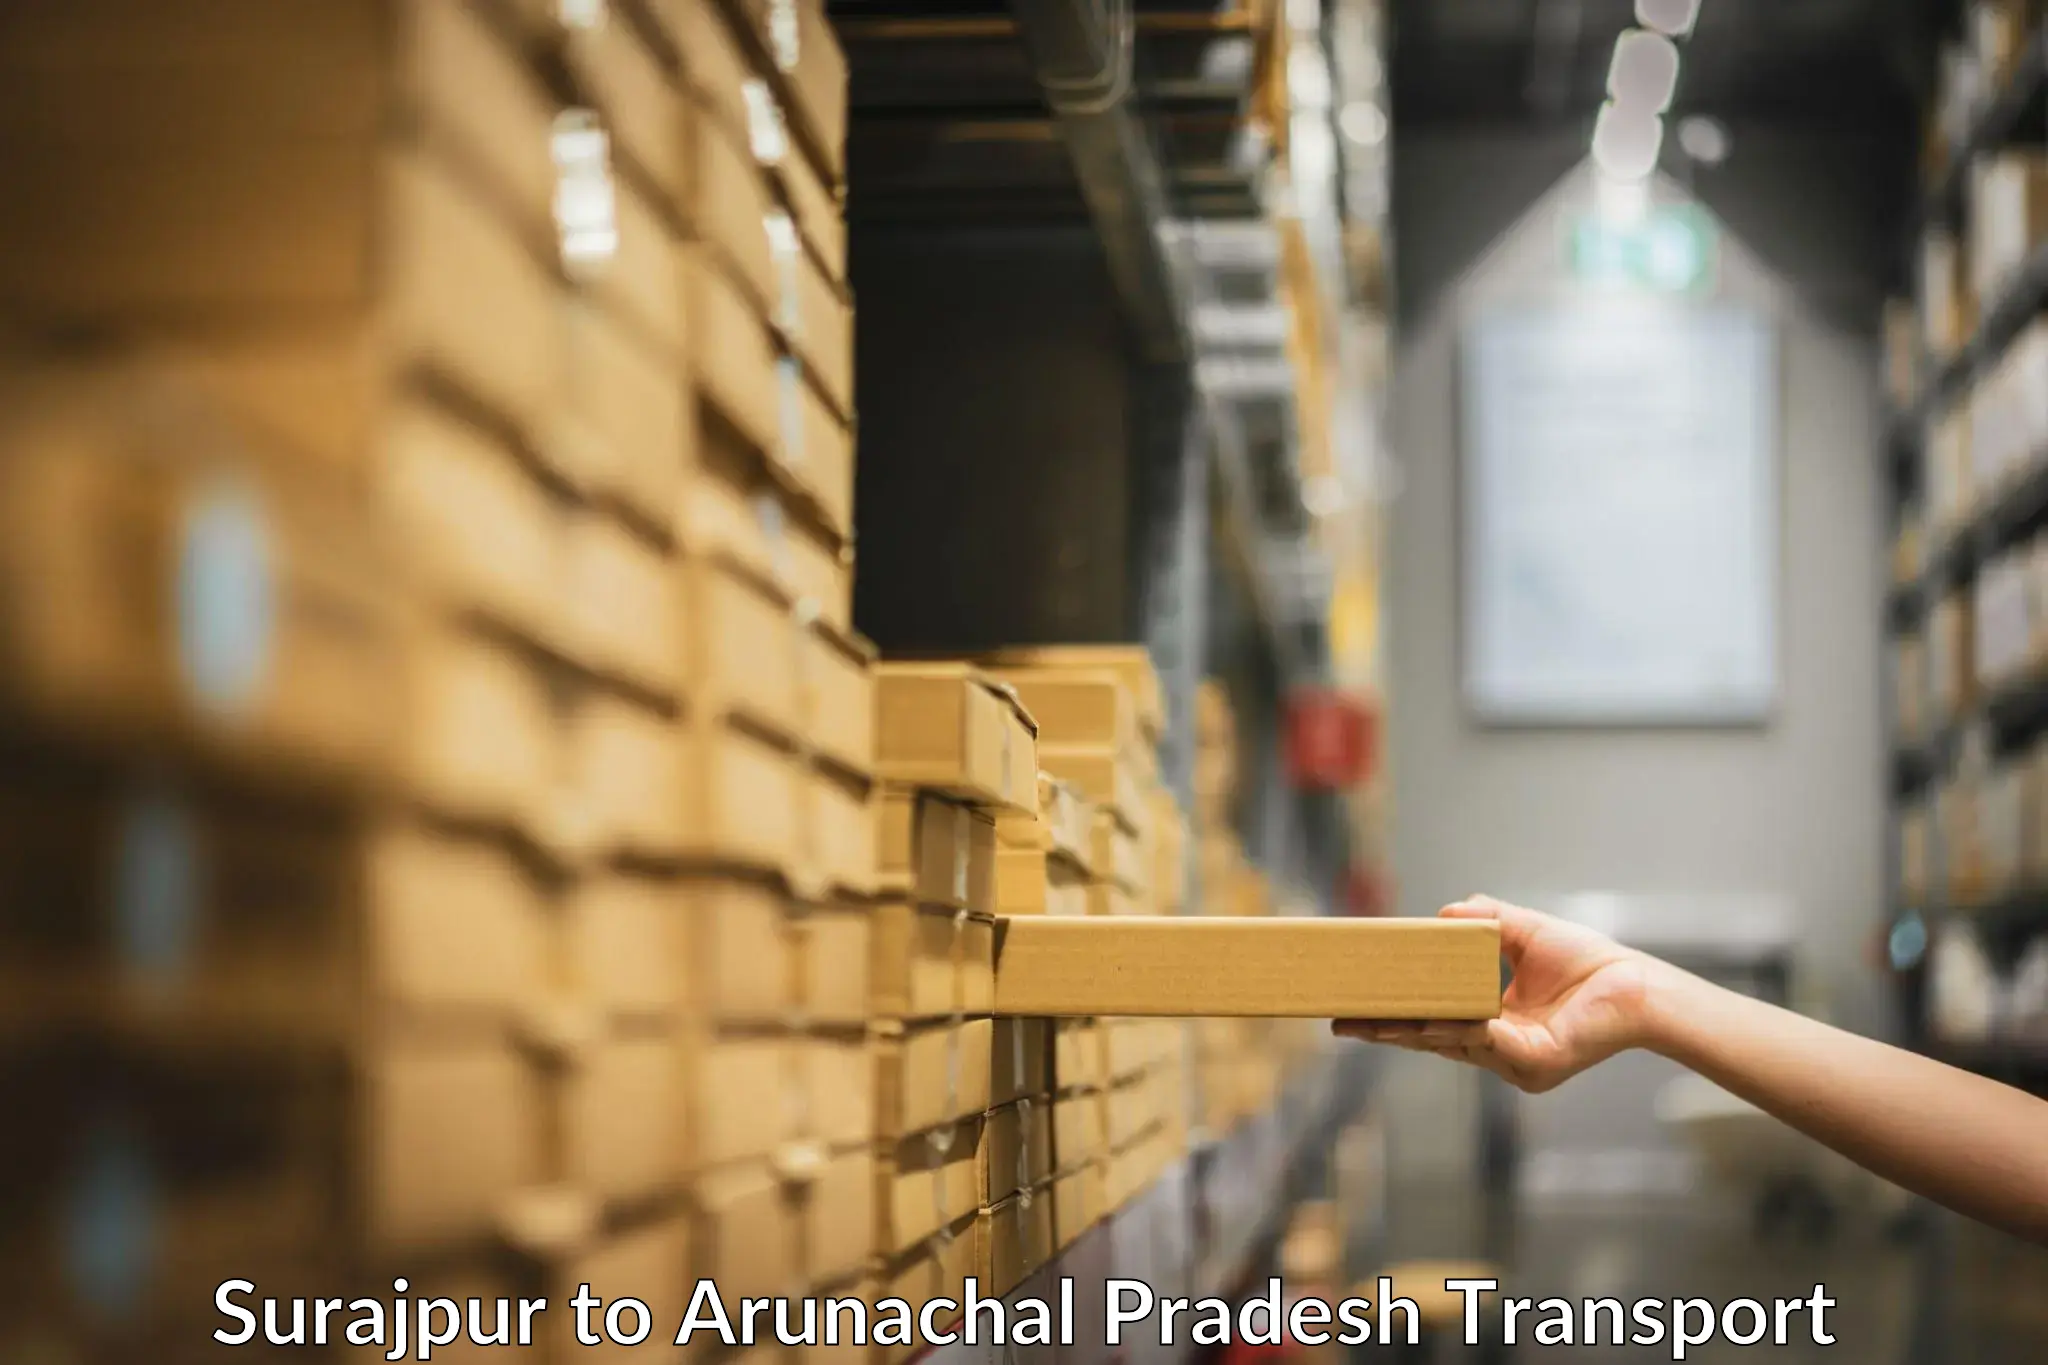 Land transport services in Surajpur to Arunachal Pradesh